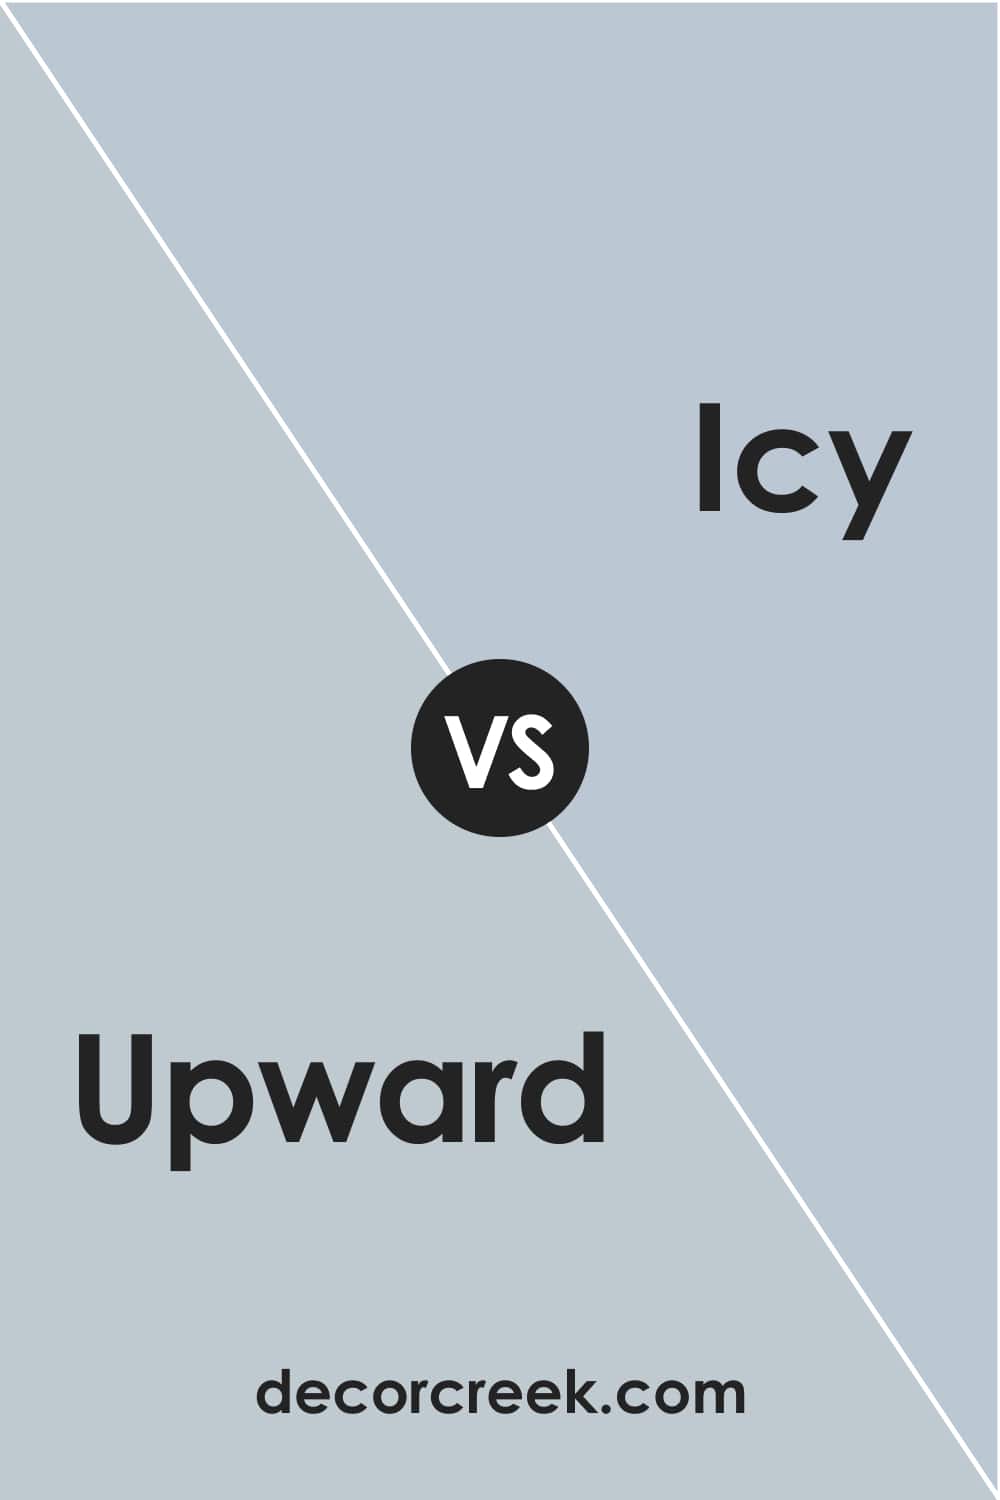 Upward vs Icy